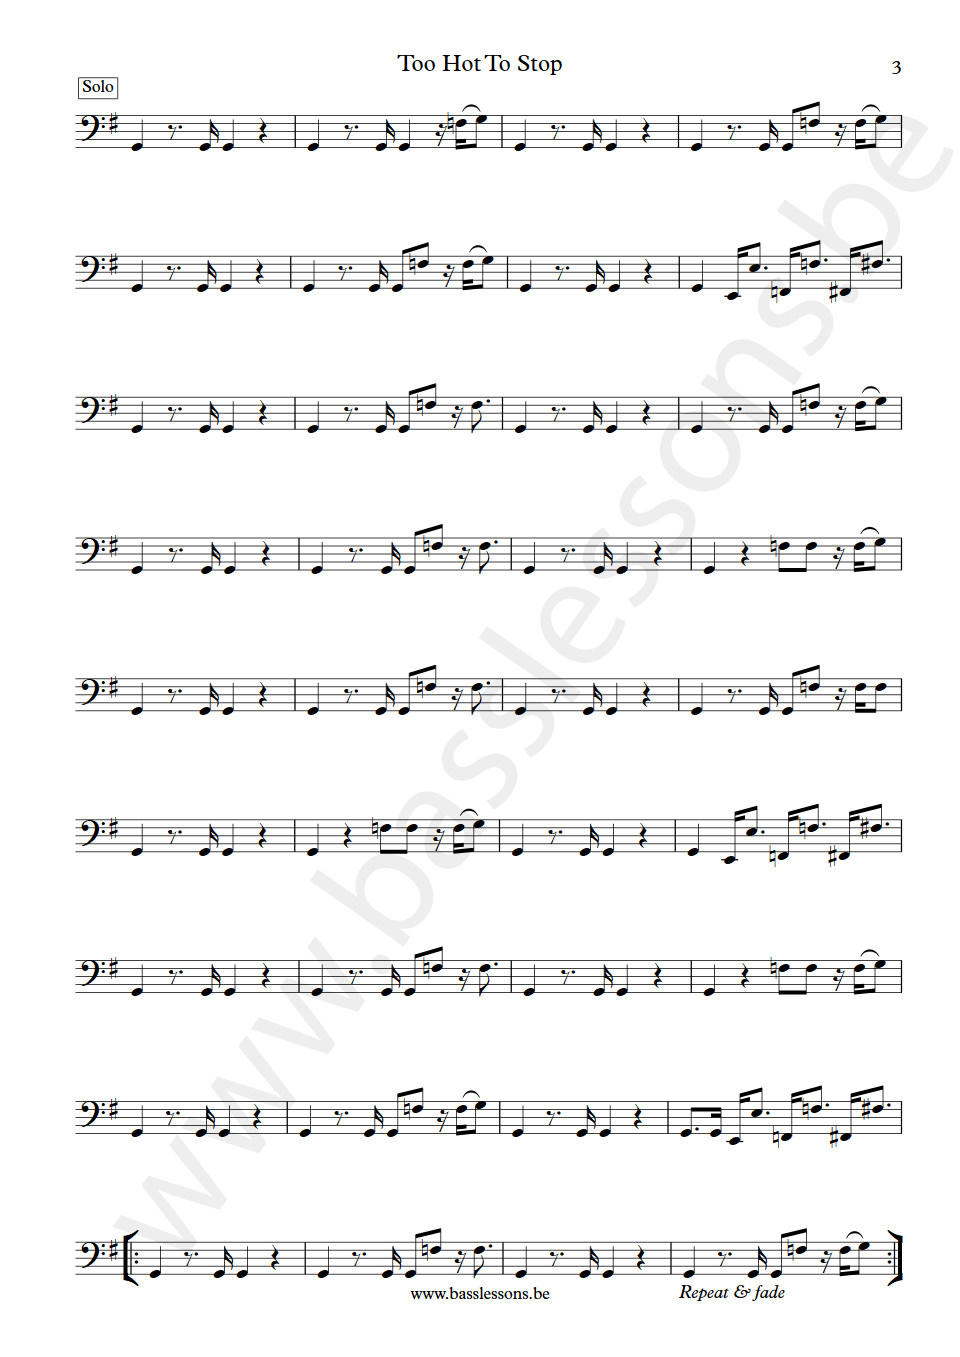 Bar-Kays Too Hot To Stop James Alexander bass transcription part 3